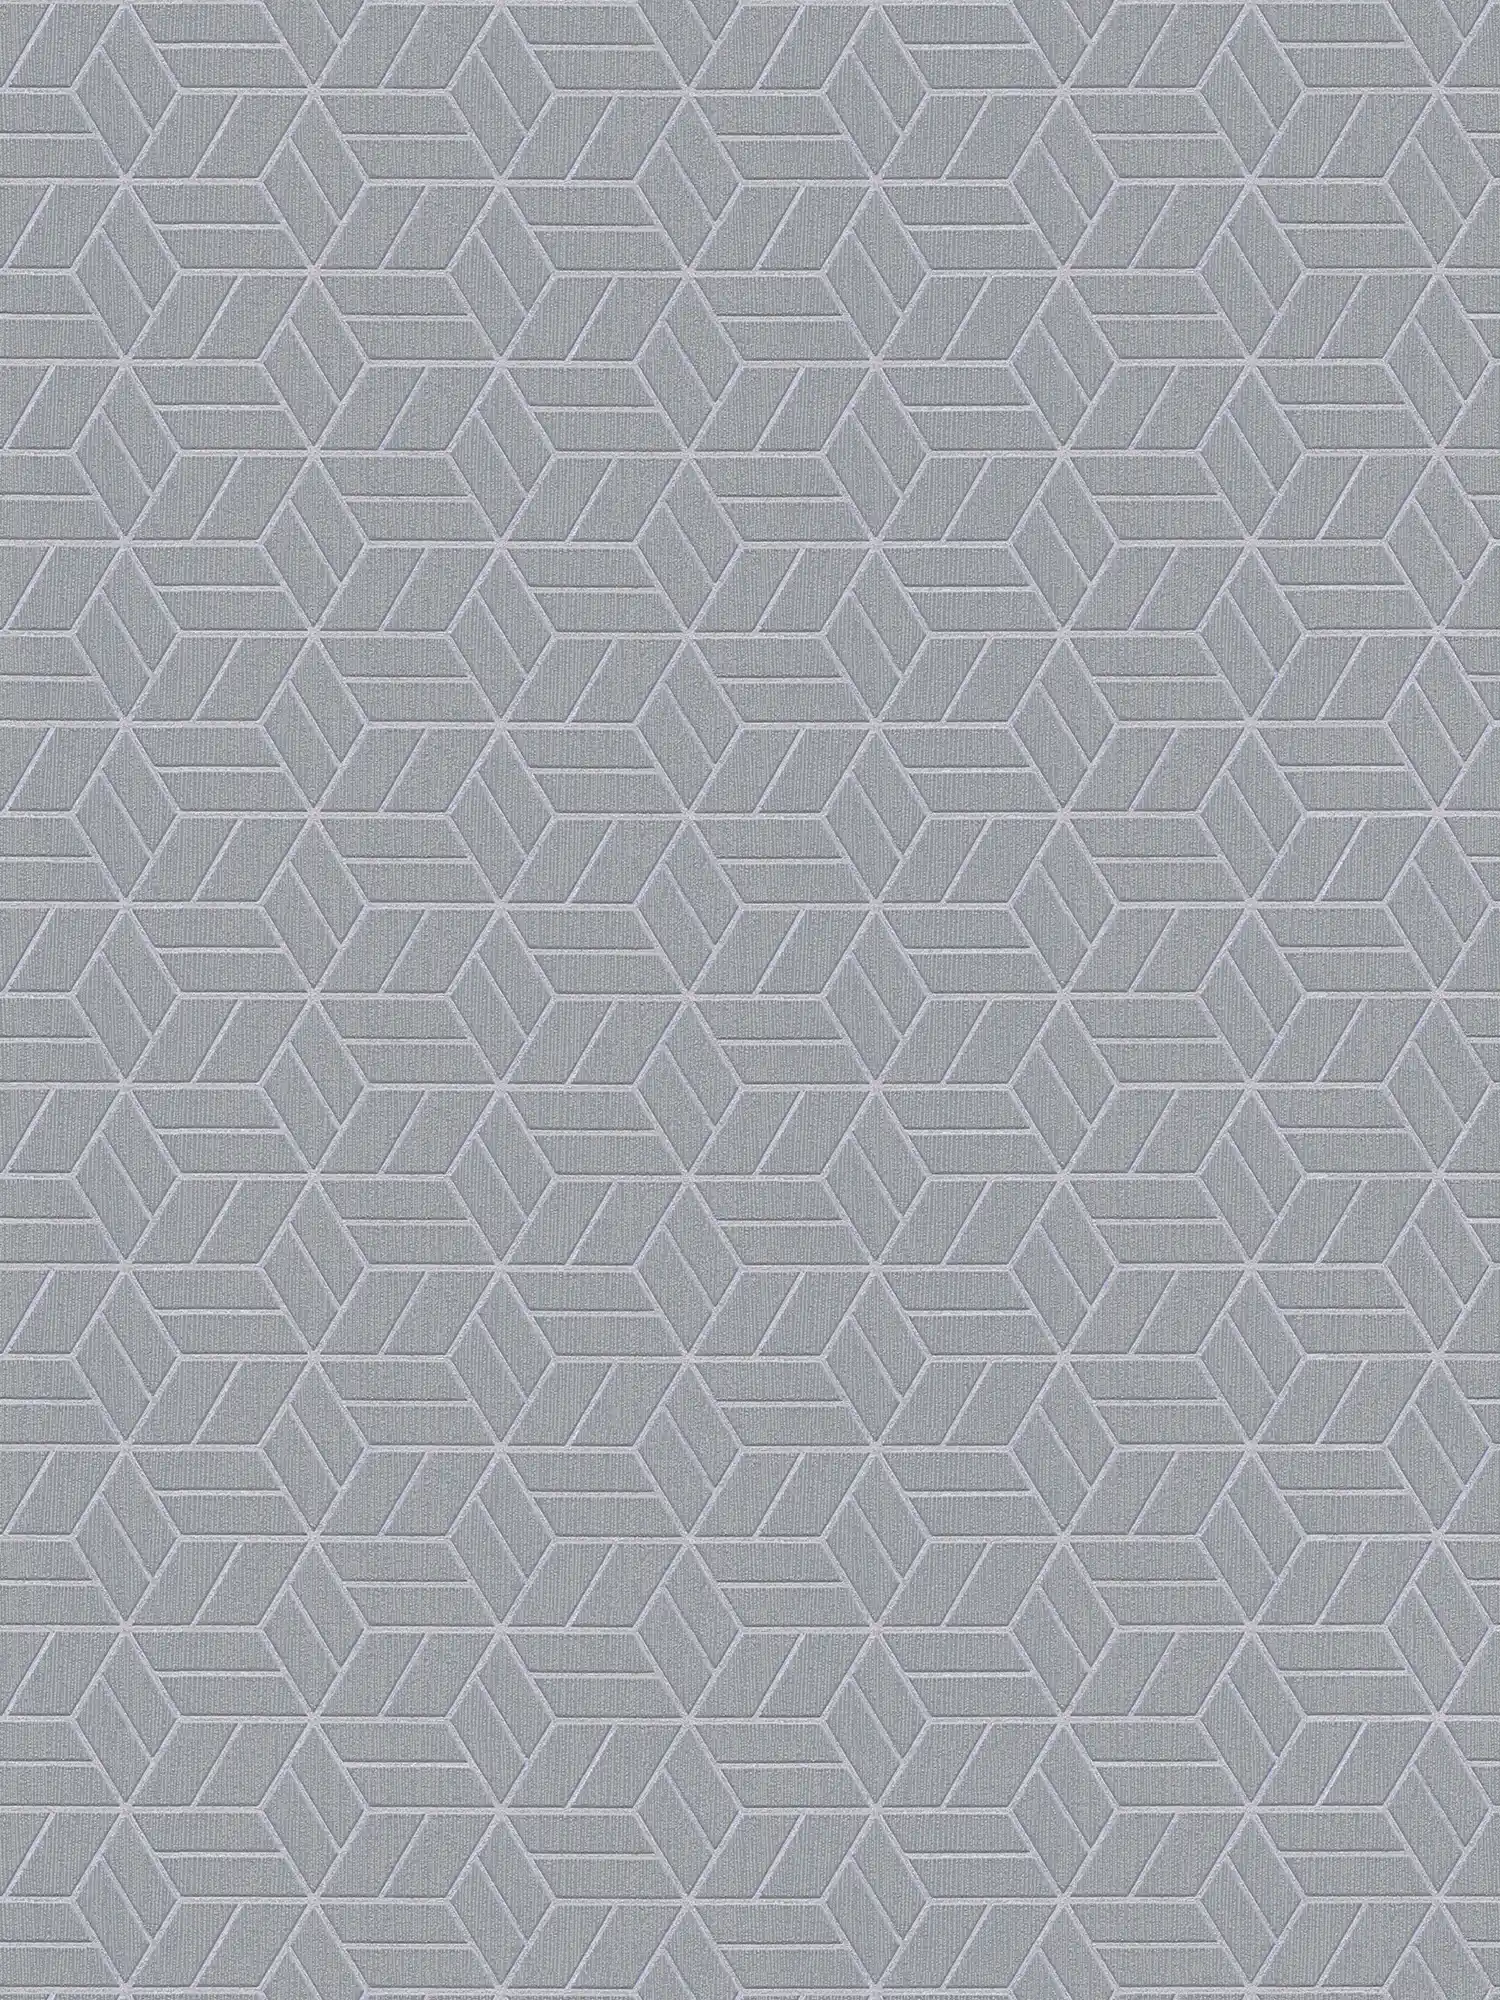 Wallpaper geometric pattern & glitter effect - grey, silver
